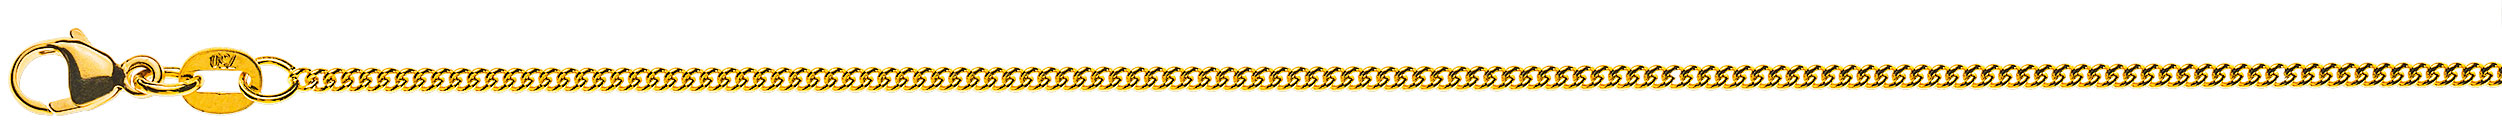 AURONOS Prestige Halskette Gelbgold 18K Rundpanzerkette 38cm 1.6mm